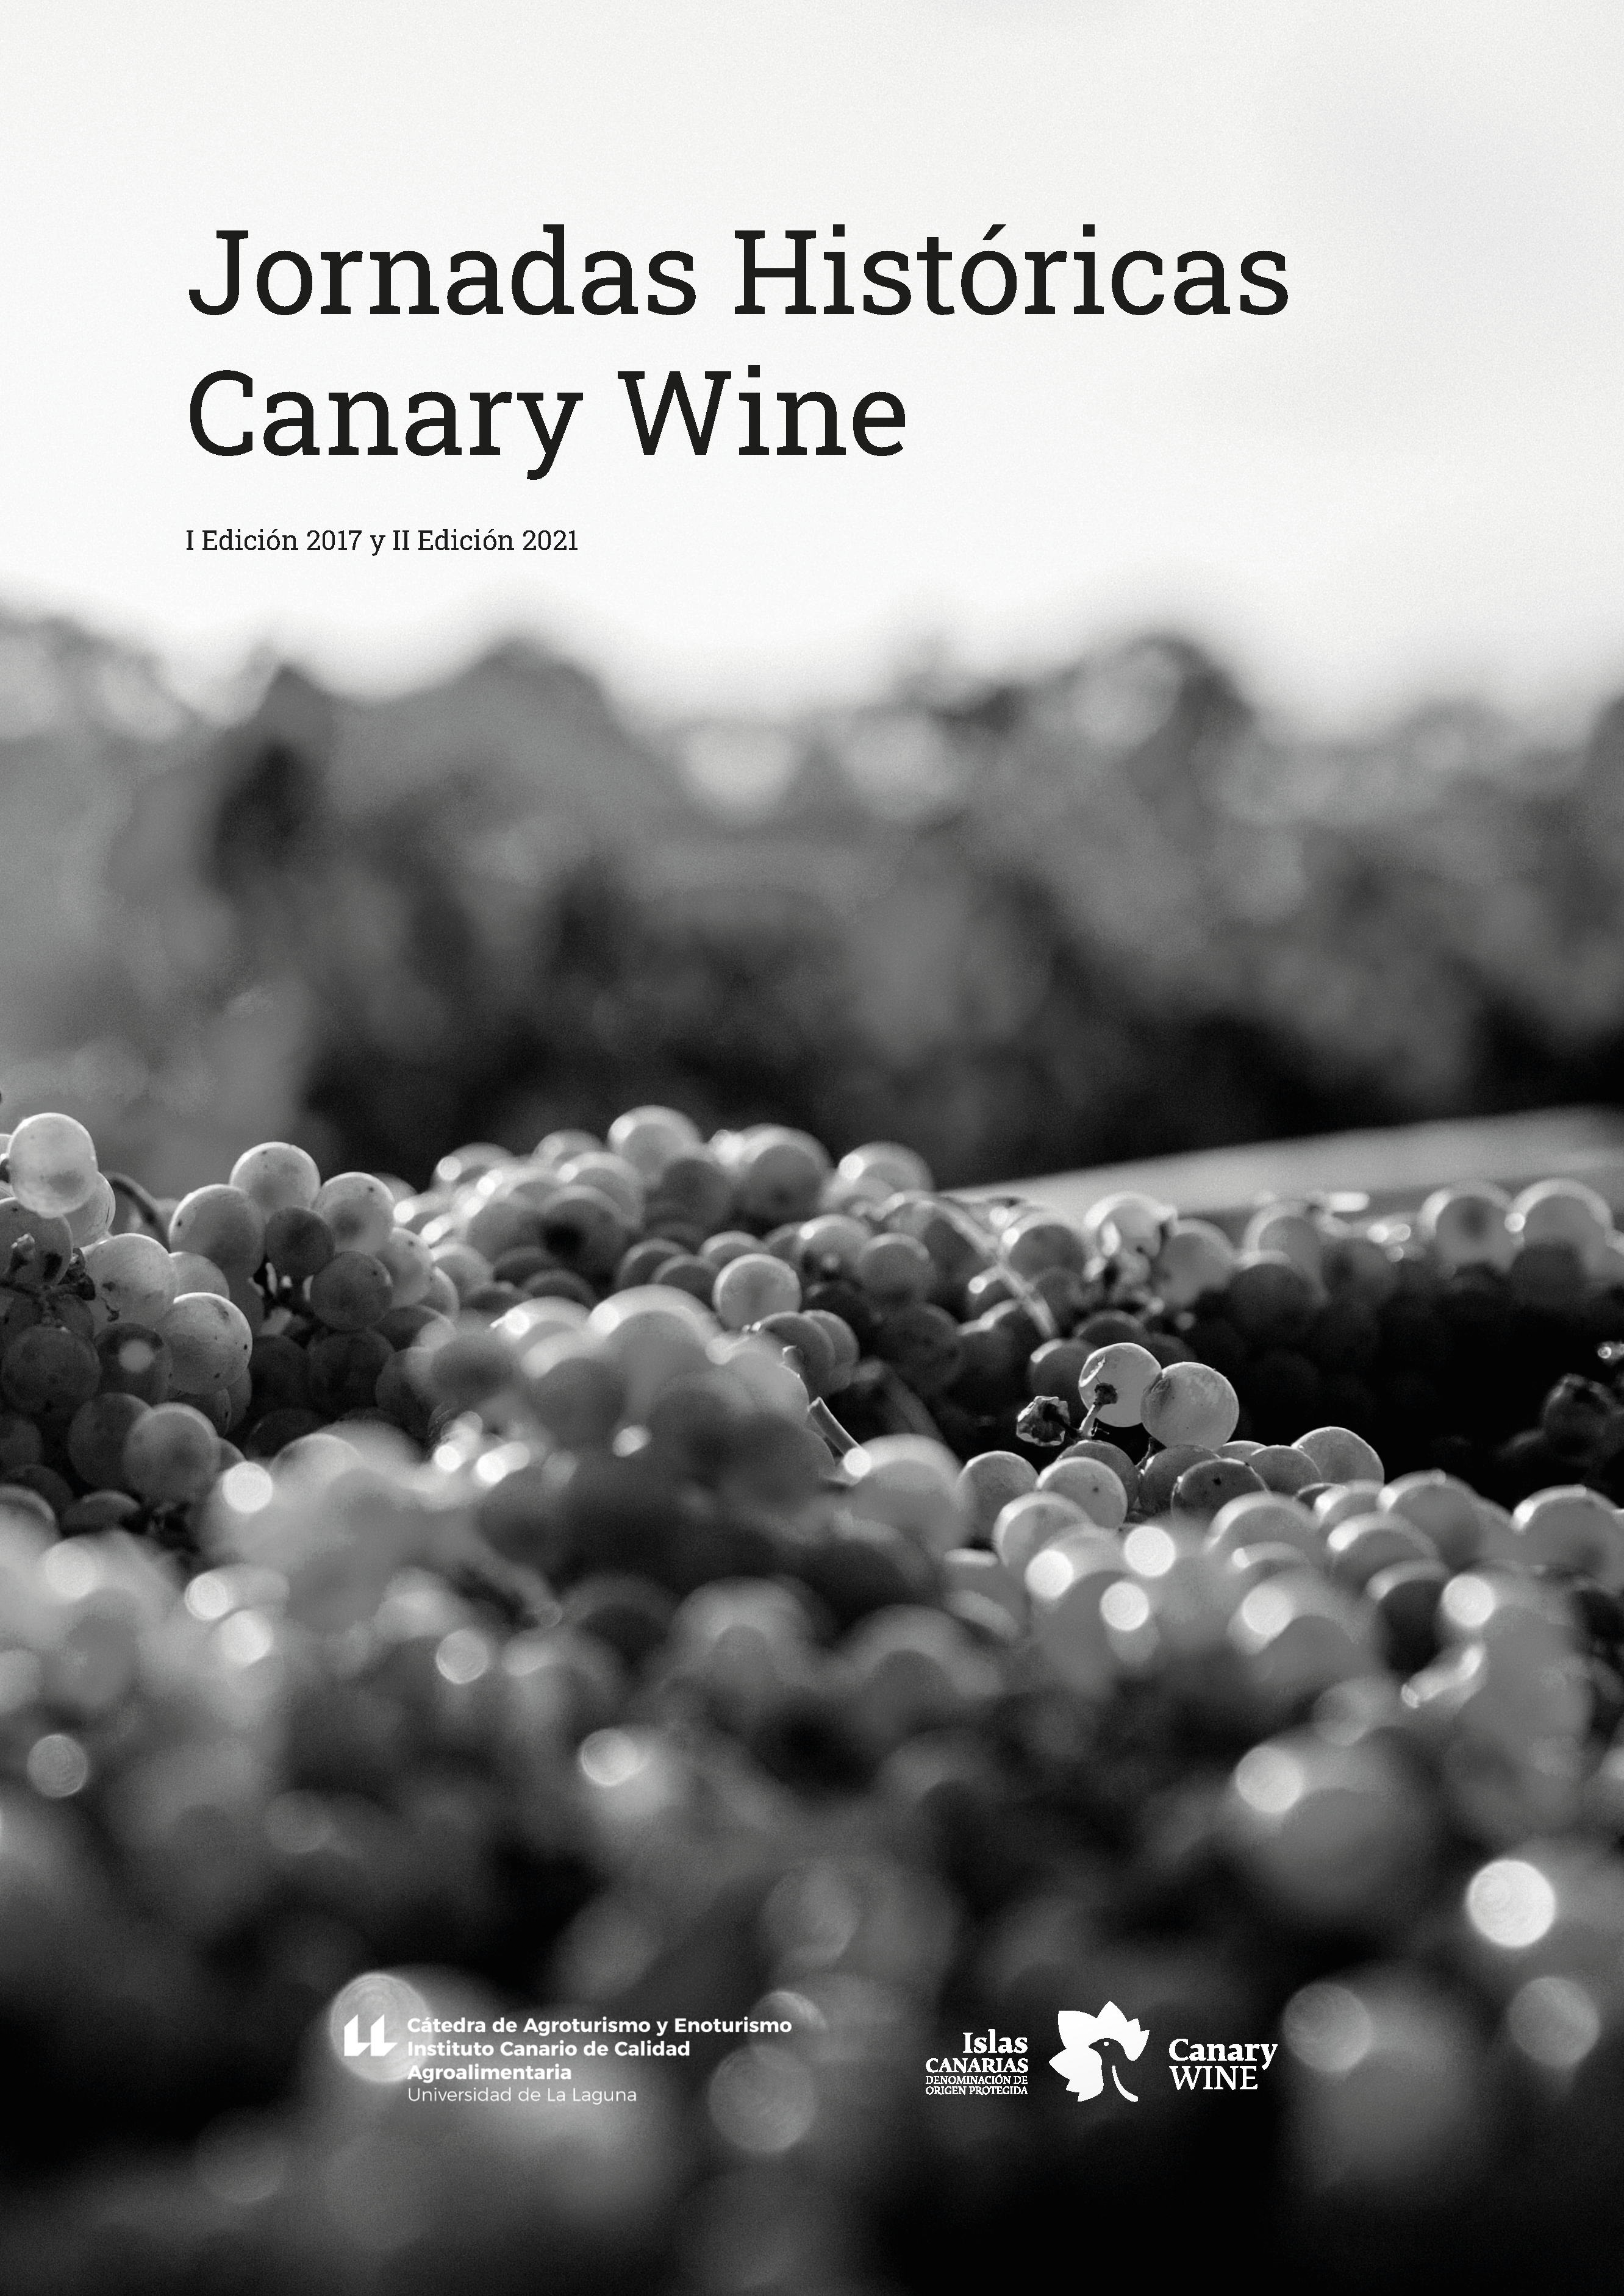 Presentado el libro de las Jornadas Históricas “Canary Wine”